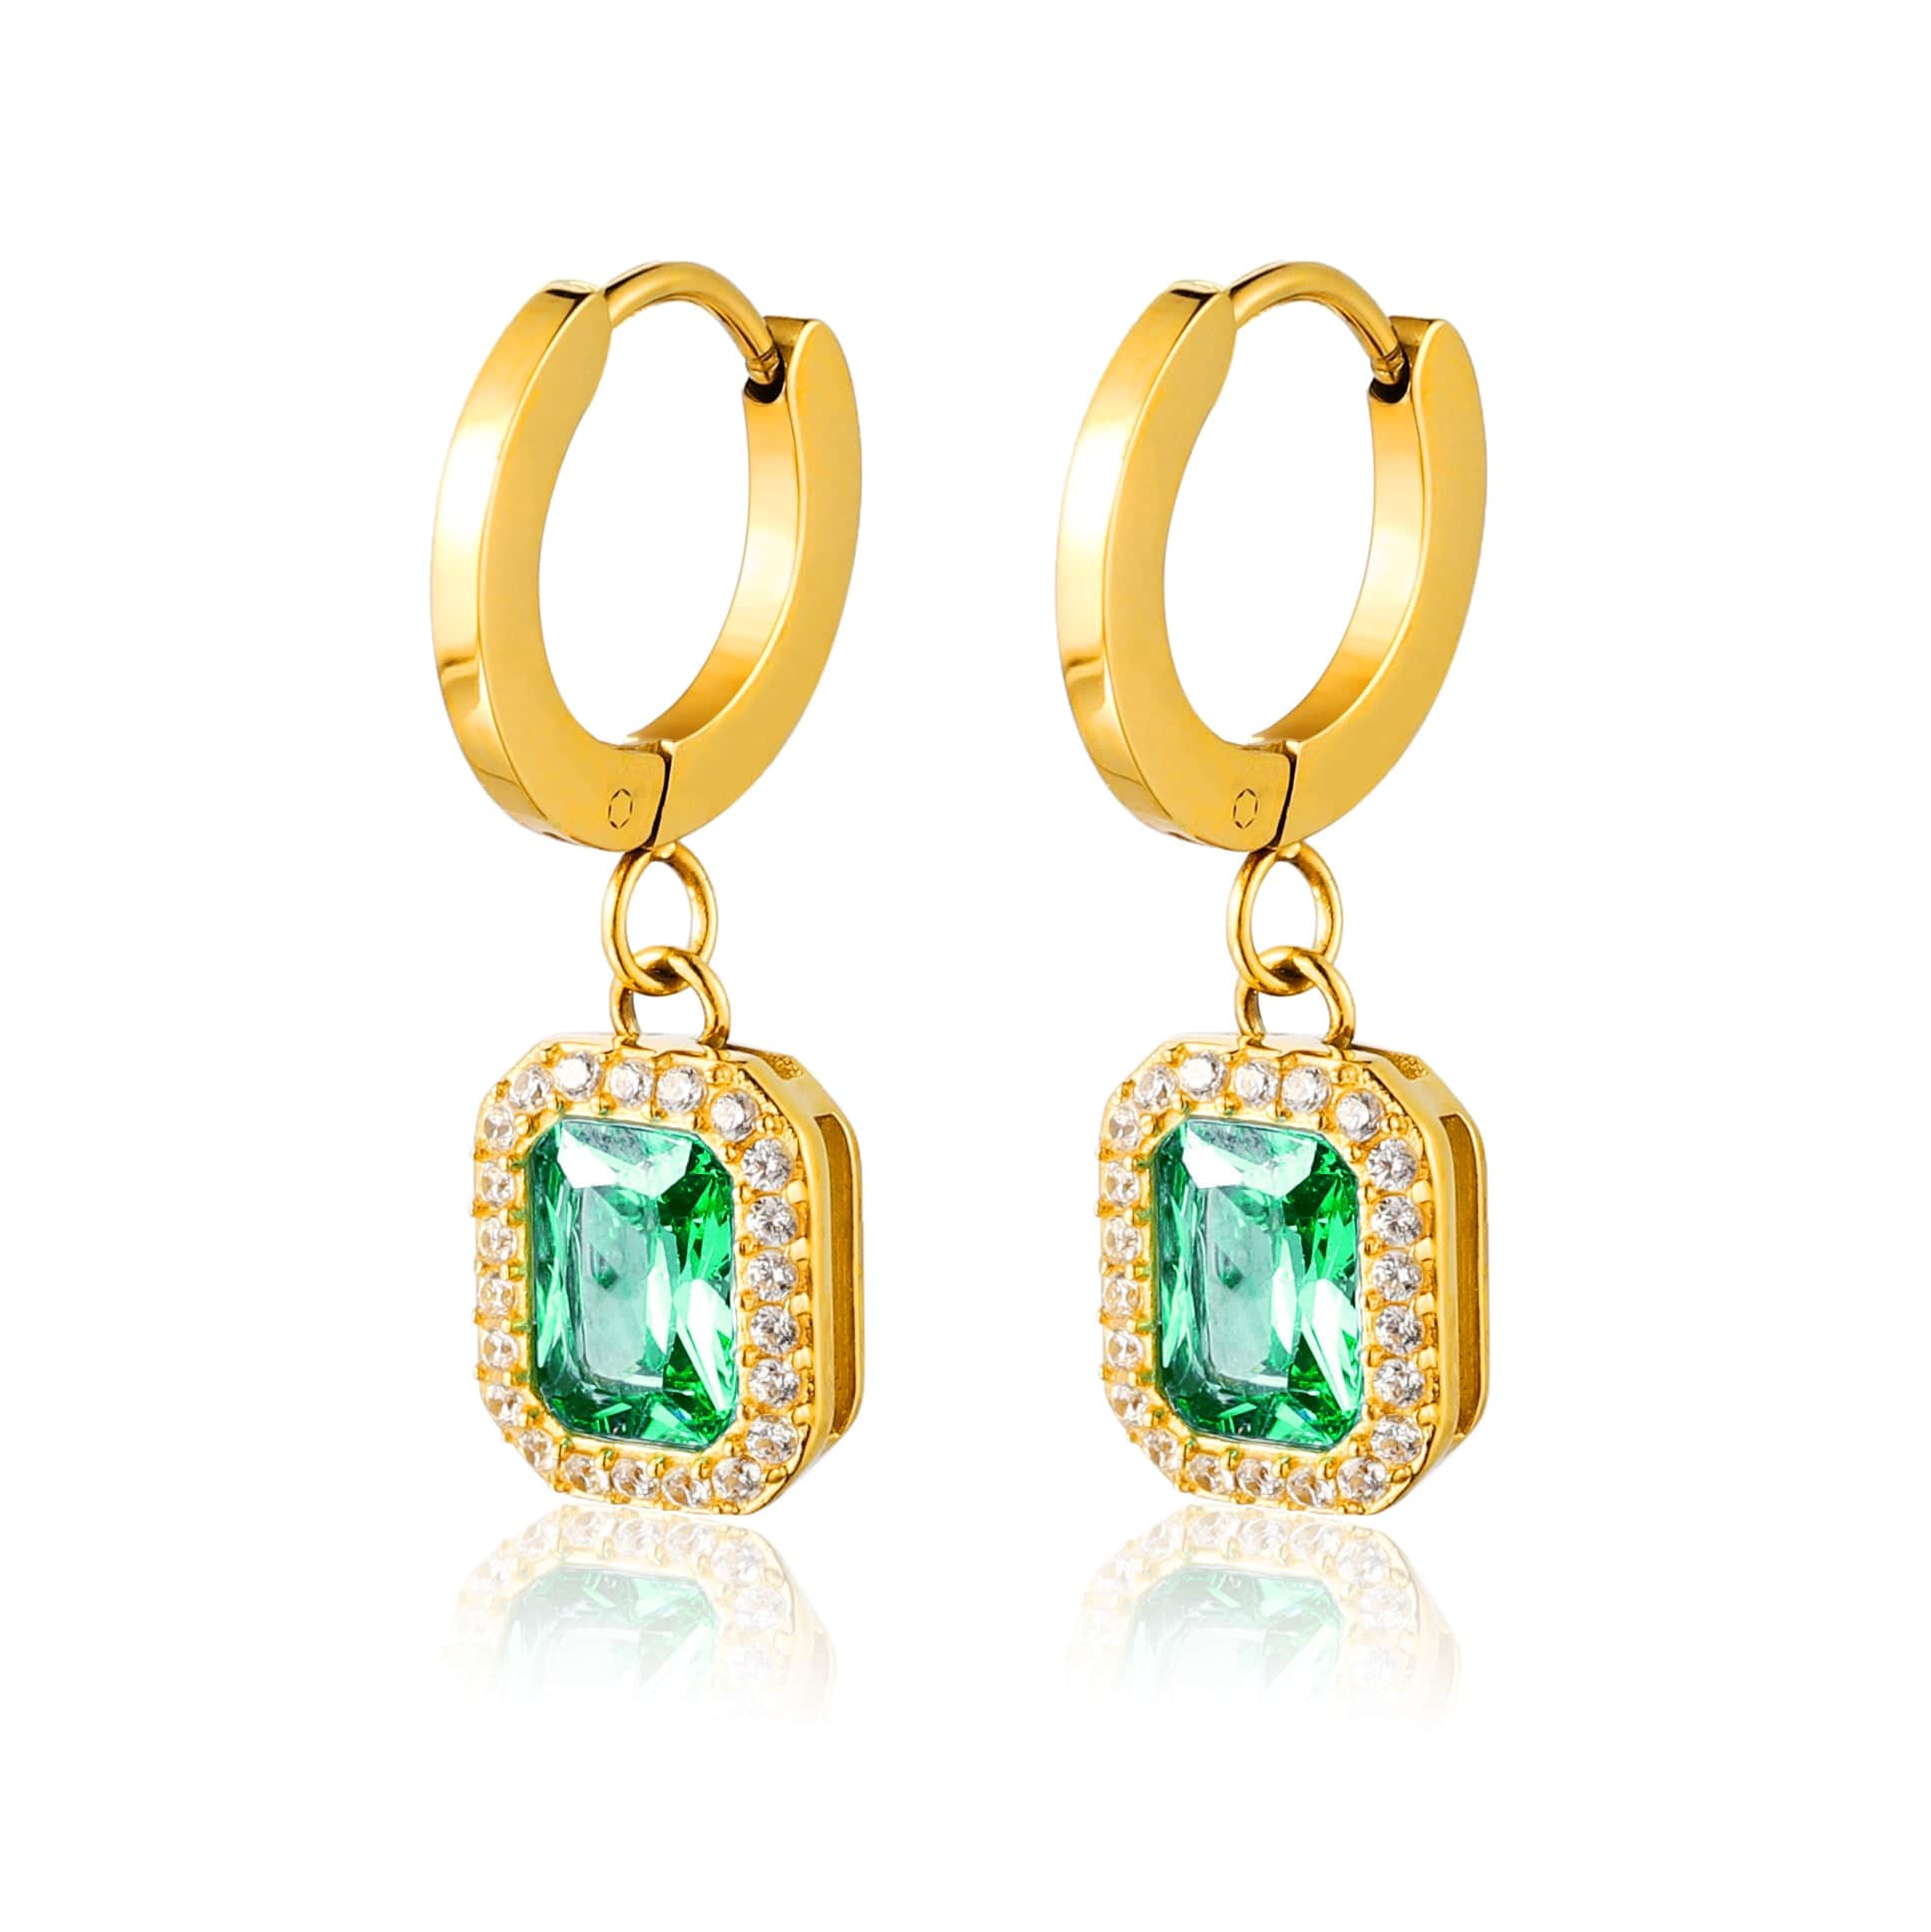 bianco rosso Earrings Emerald Hoop Zircon Earrings cyprus greece jewelry gift free shipping europe worldwide